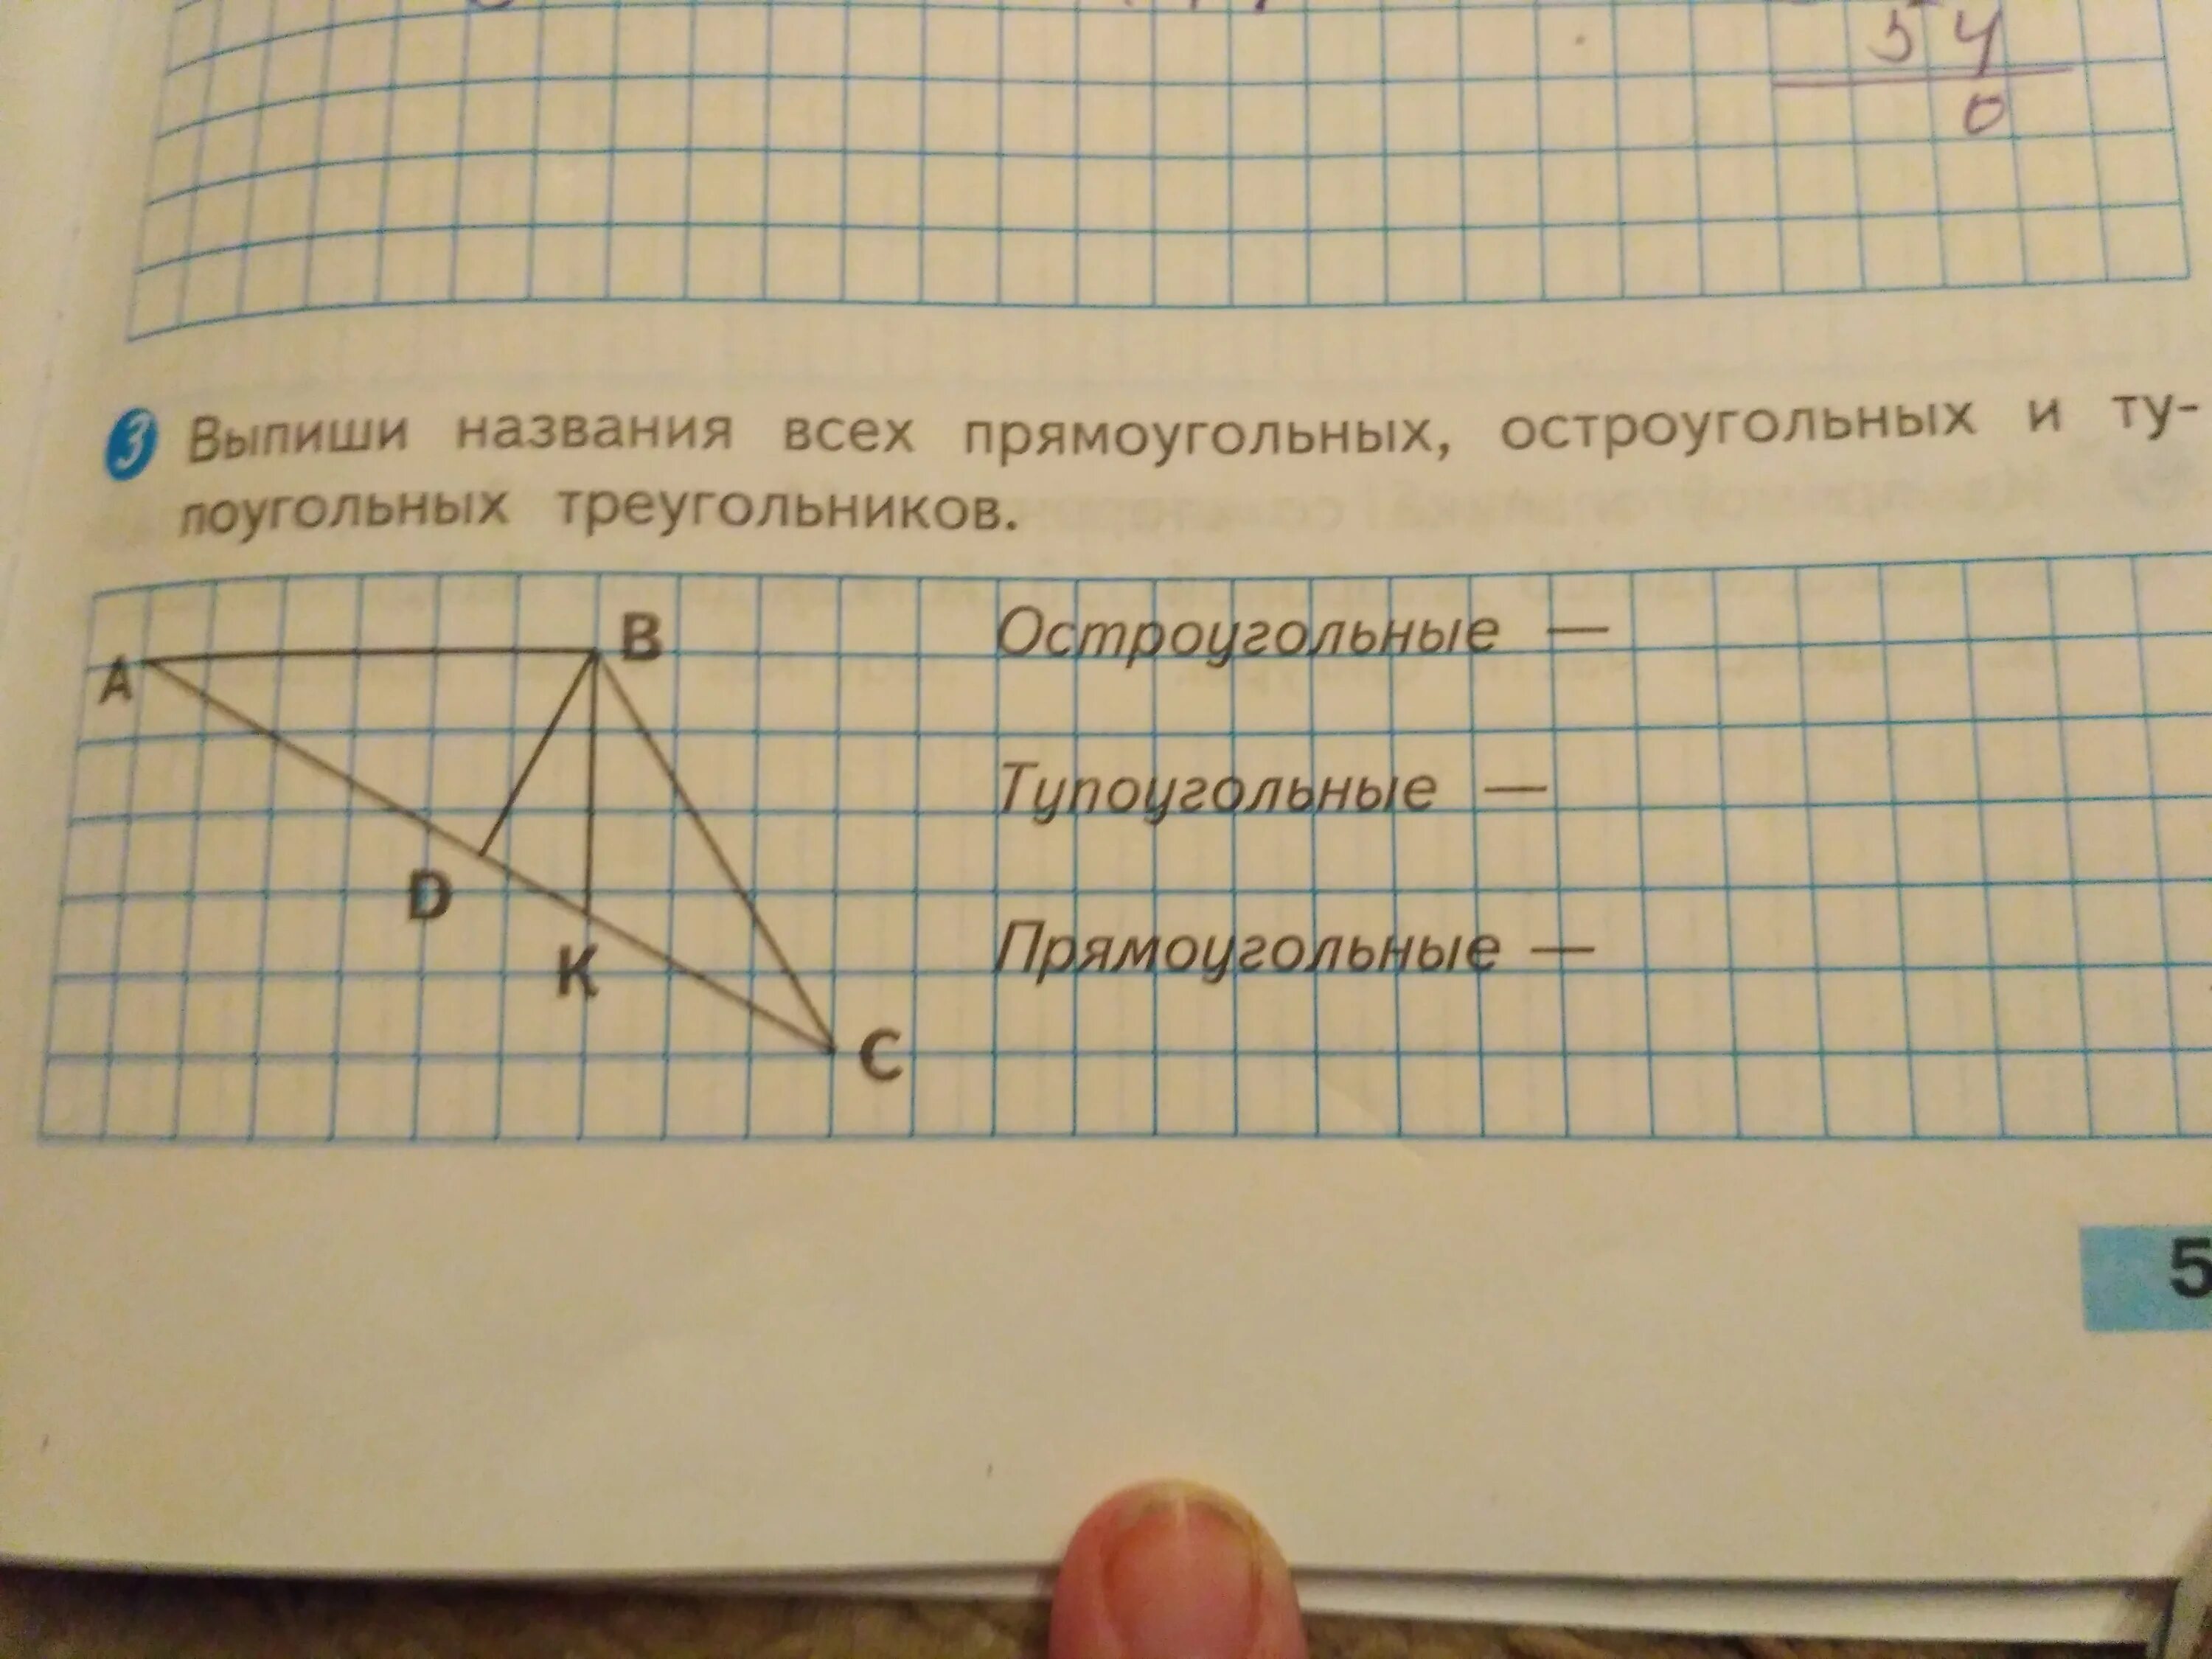 Выпиши названия прямоугольного треугольника остроугольных треугольников. Выпиши названия всех треугольников. Выпиши названия прямоугольных треугольников. Выписать названия прямоугольных треугольников. Выпиши названия всех прямоугольных остроугольных и тупоугольных.